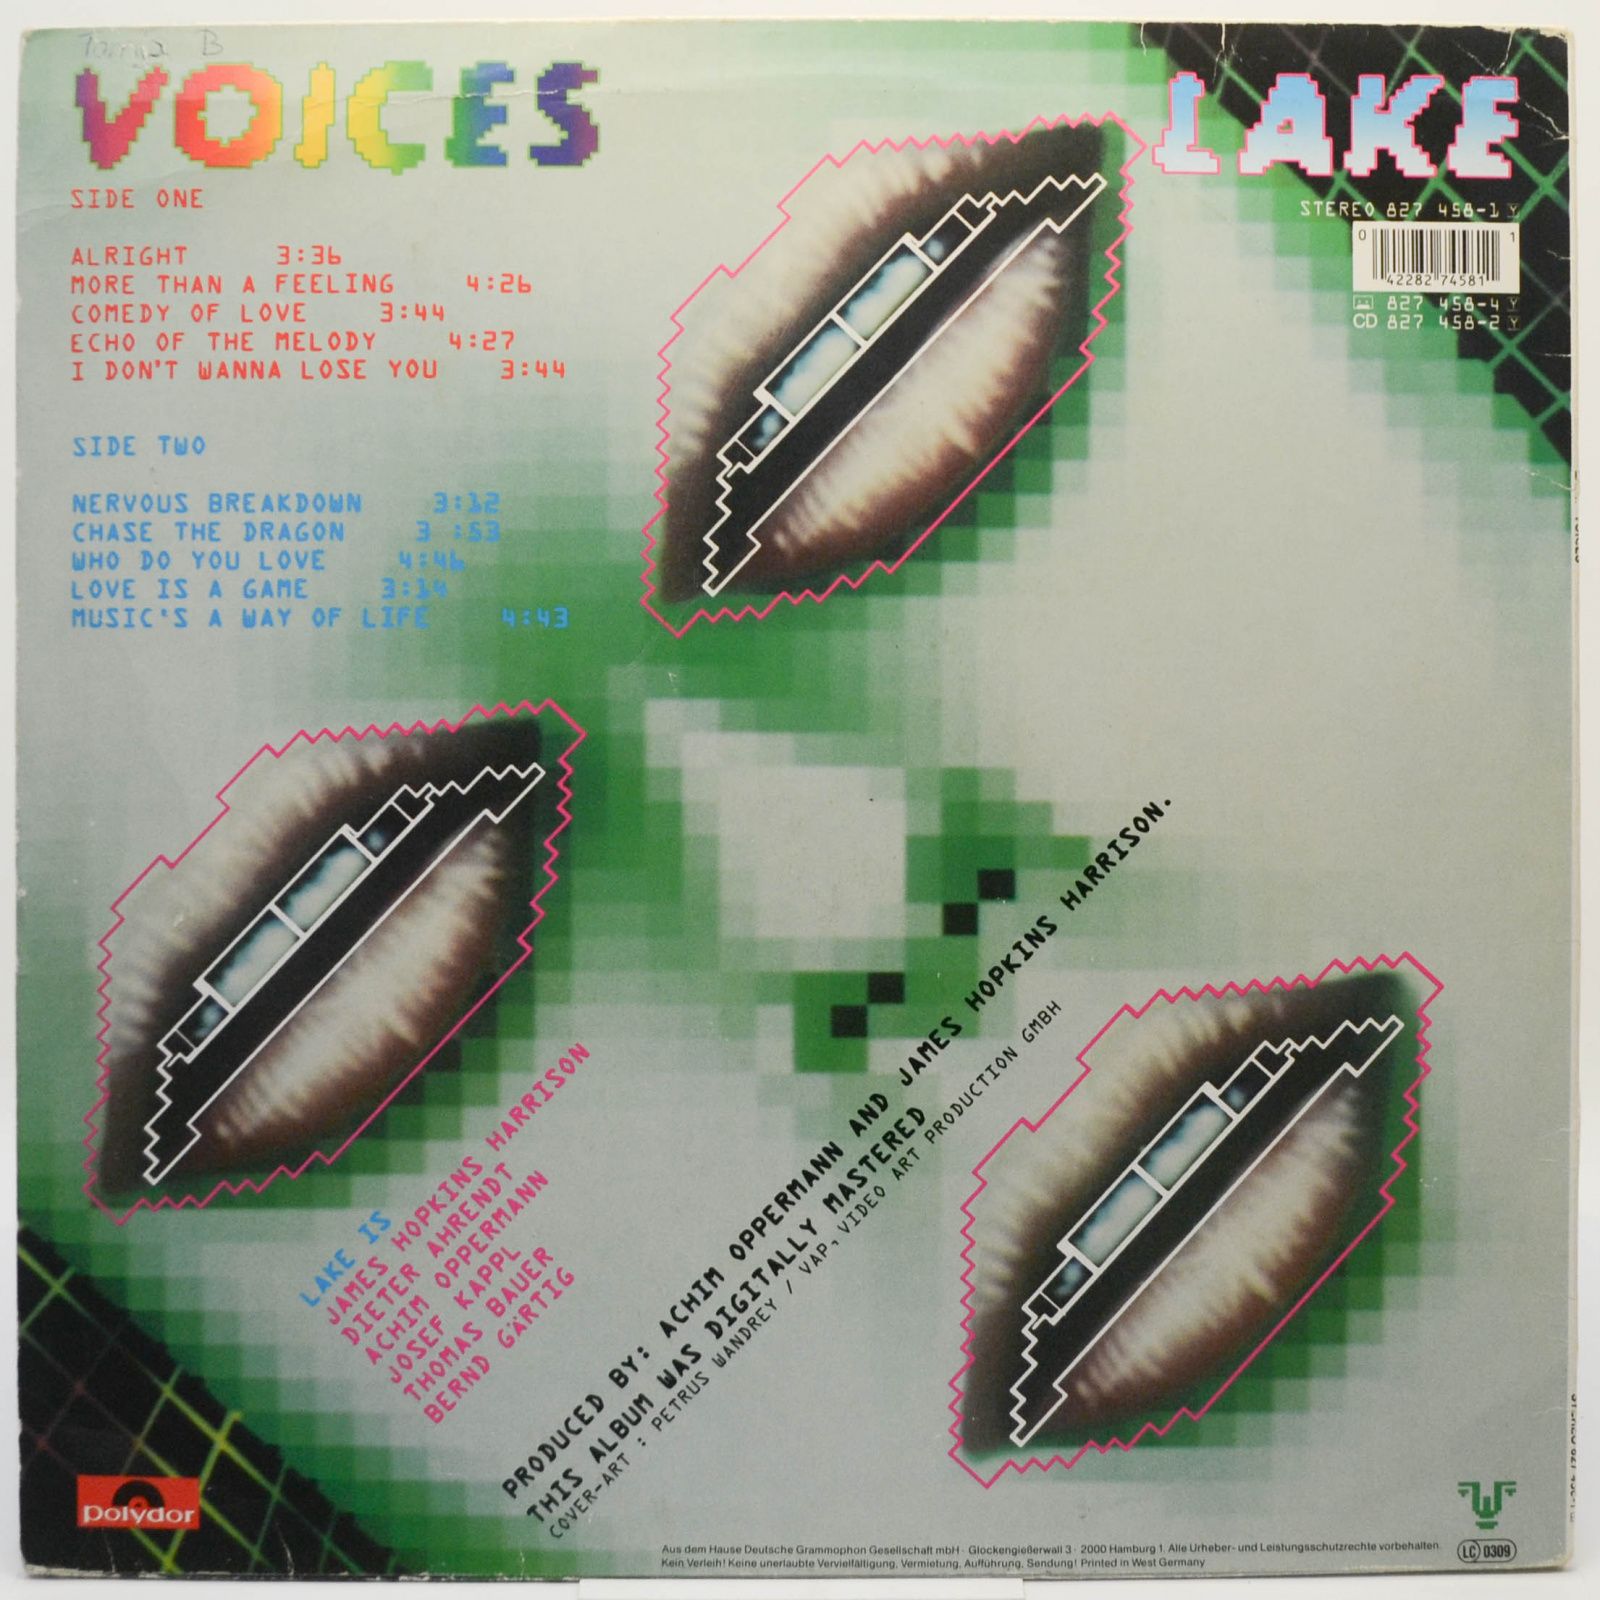 Lake — Voices, 1985